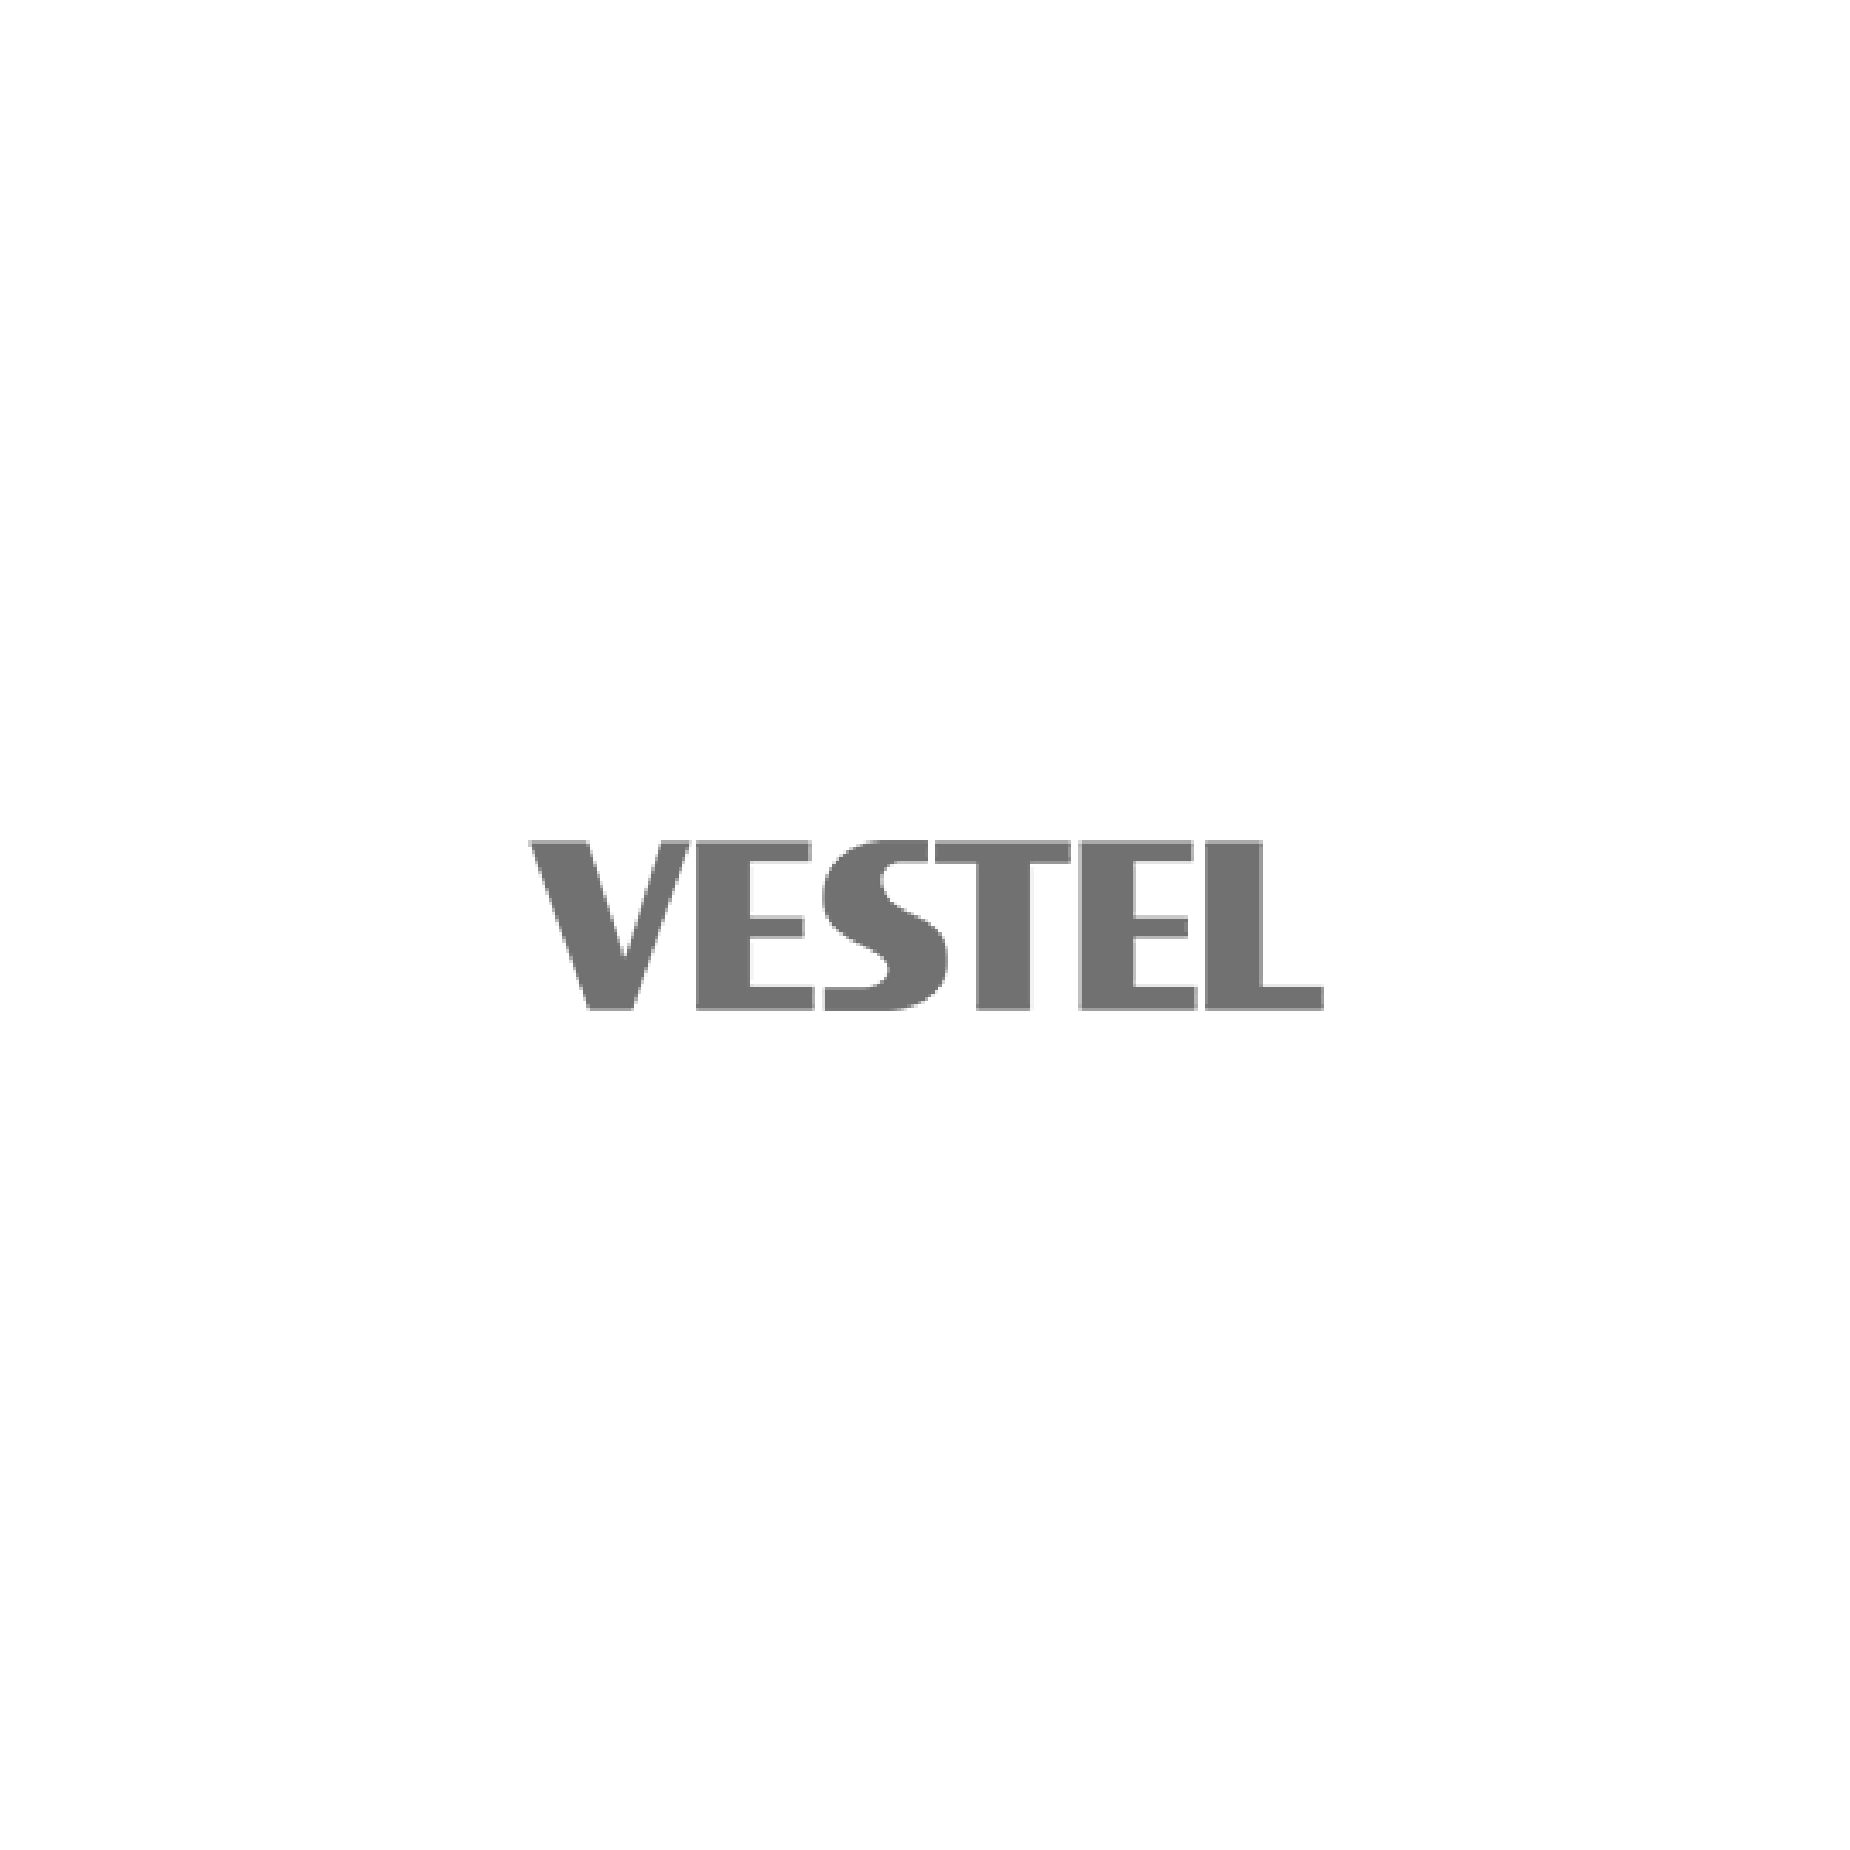 vestel-01.png